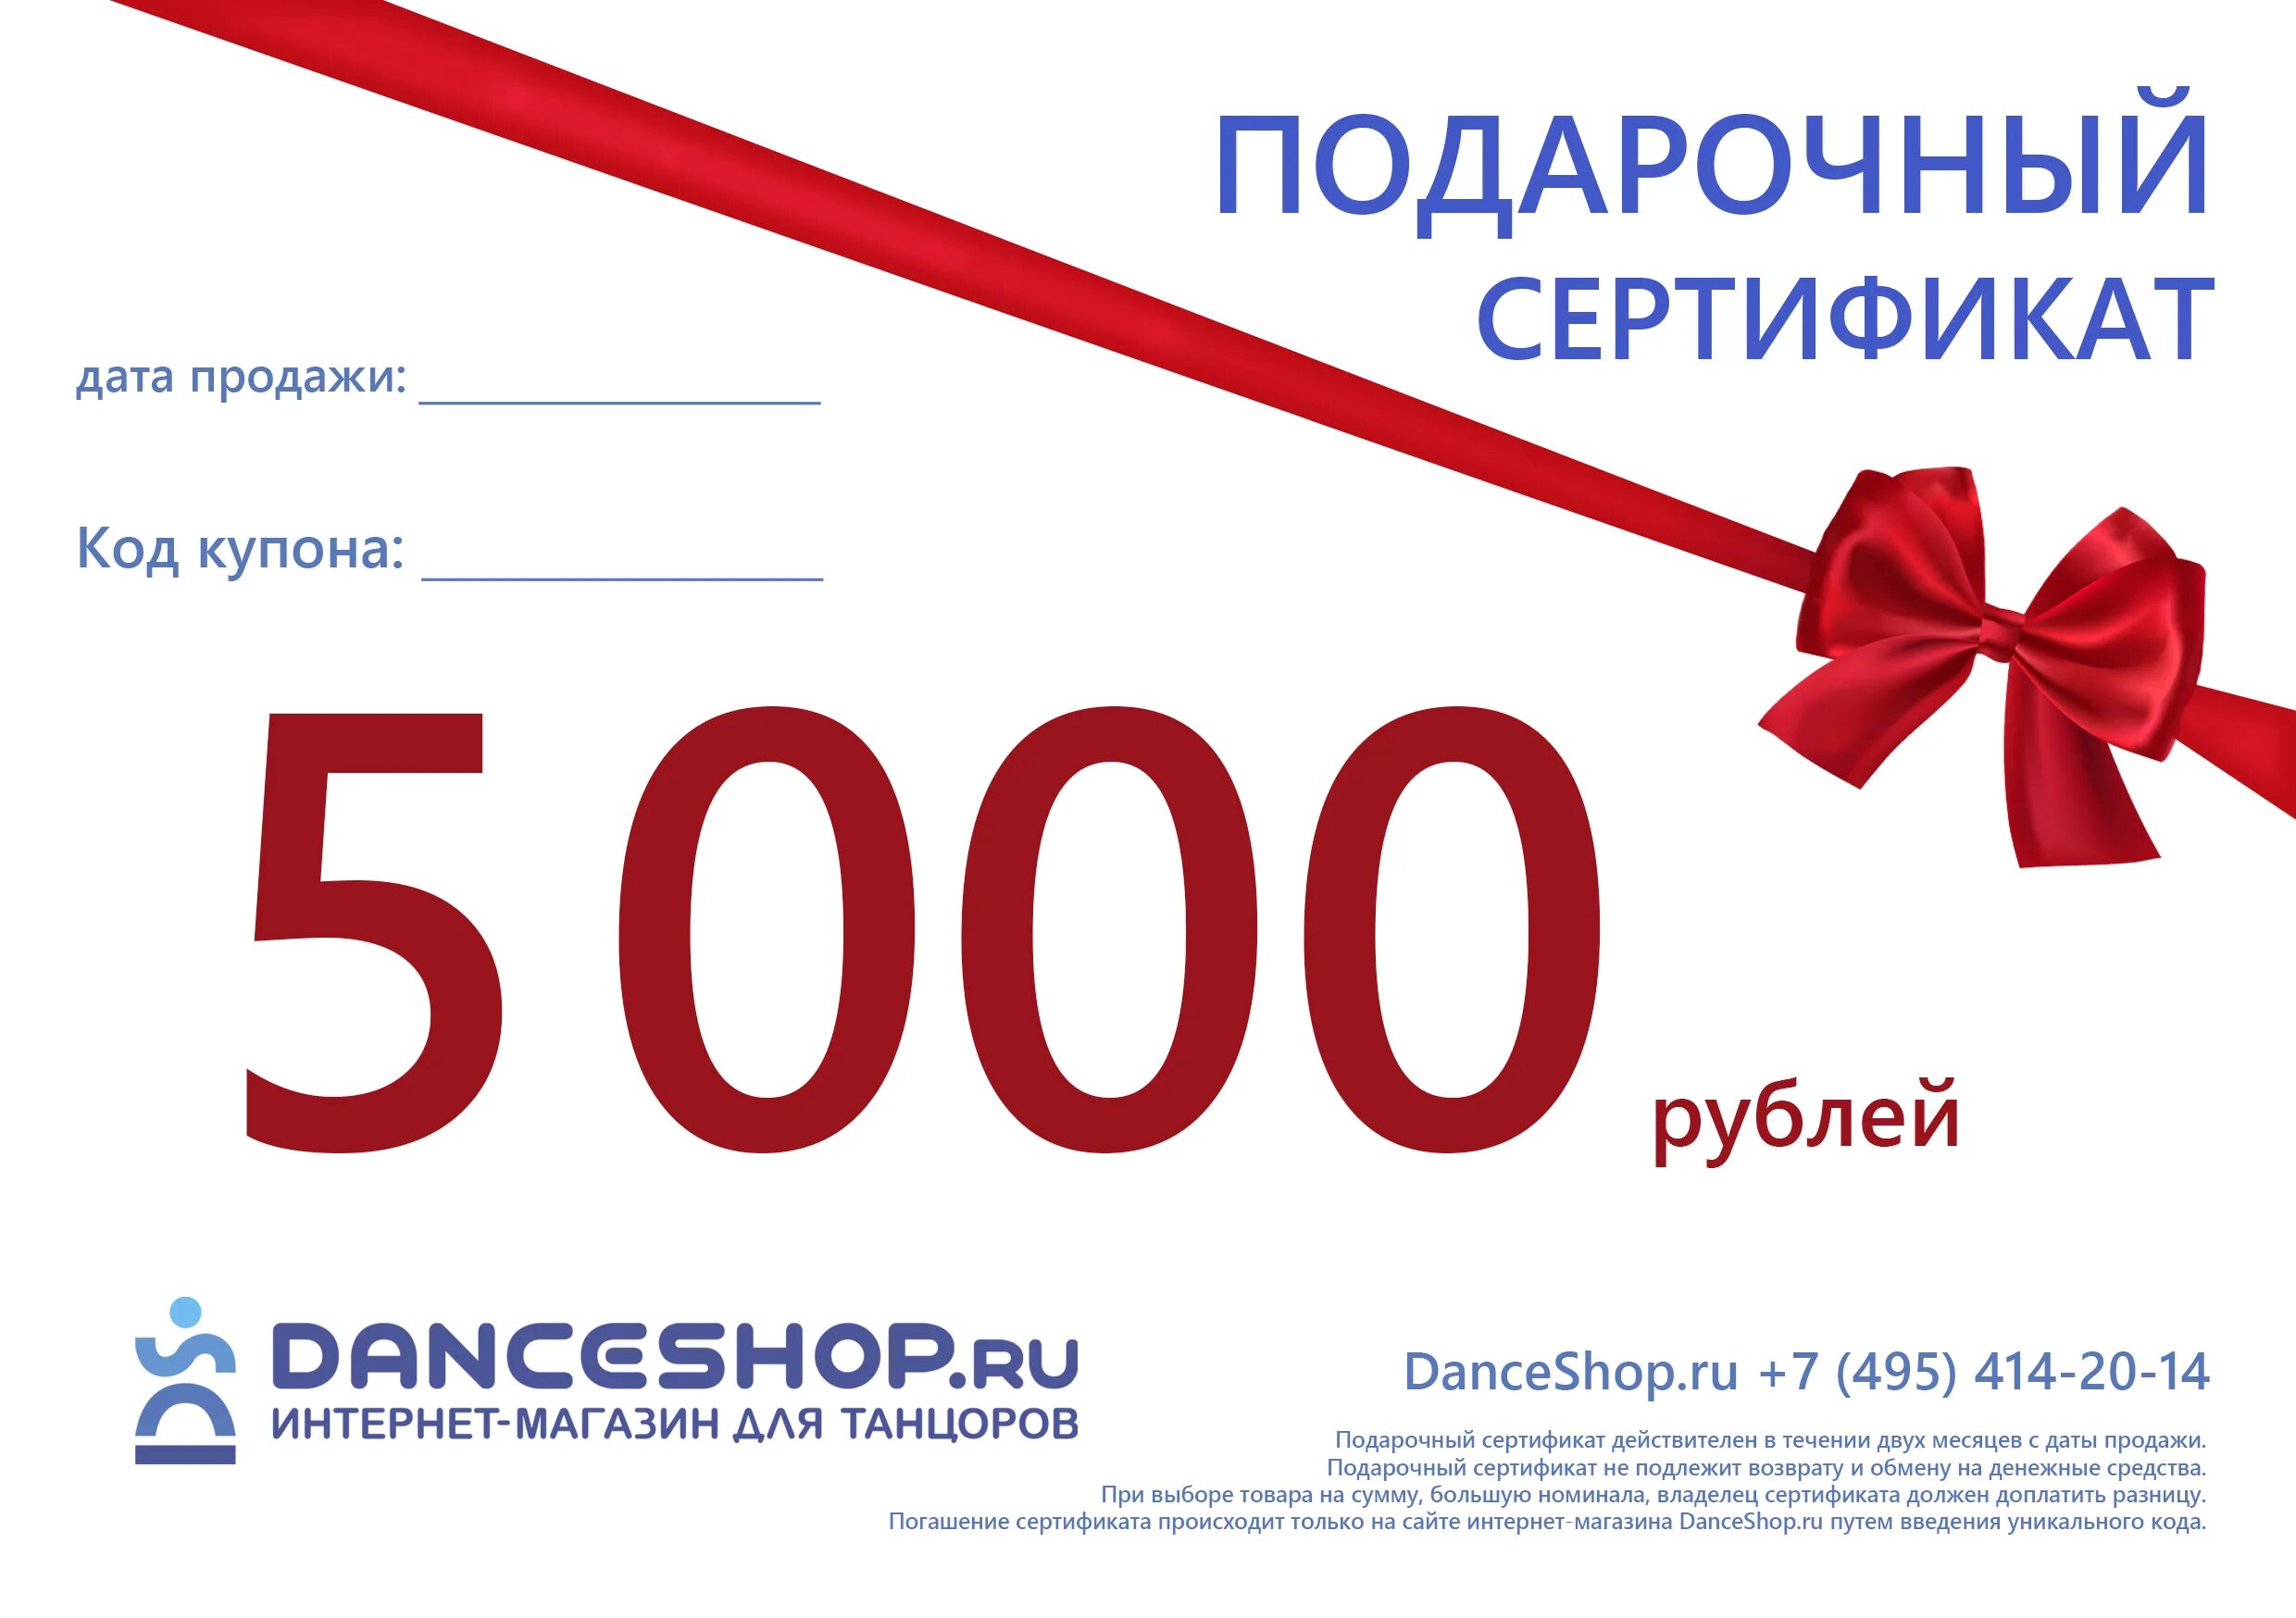 3000 5000 в рублях. Подарочный сертификат на 5000. Подарочный сертификат на 5000 рублей. Сертификат на 7000 рублей. Подарочный сертификат 3000.